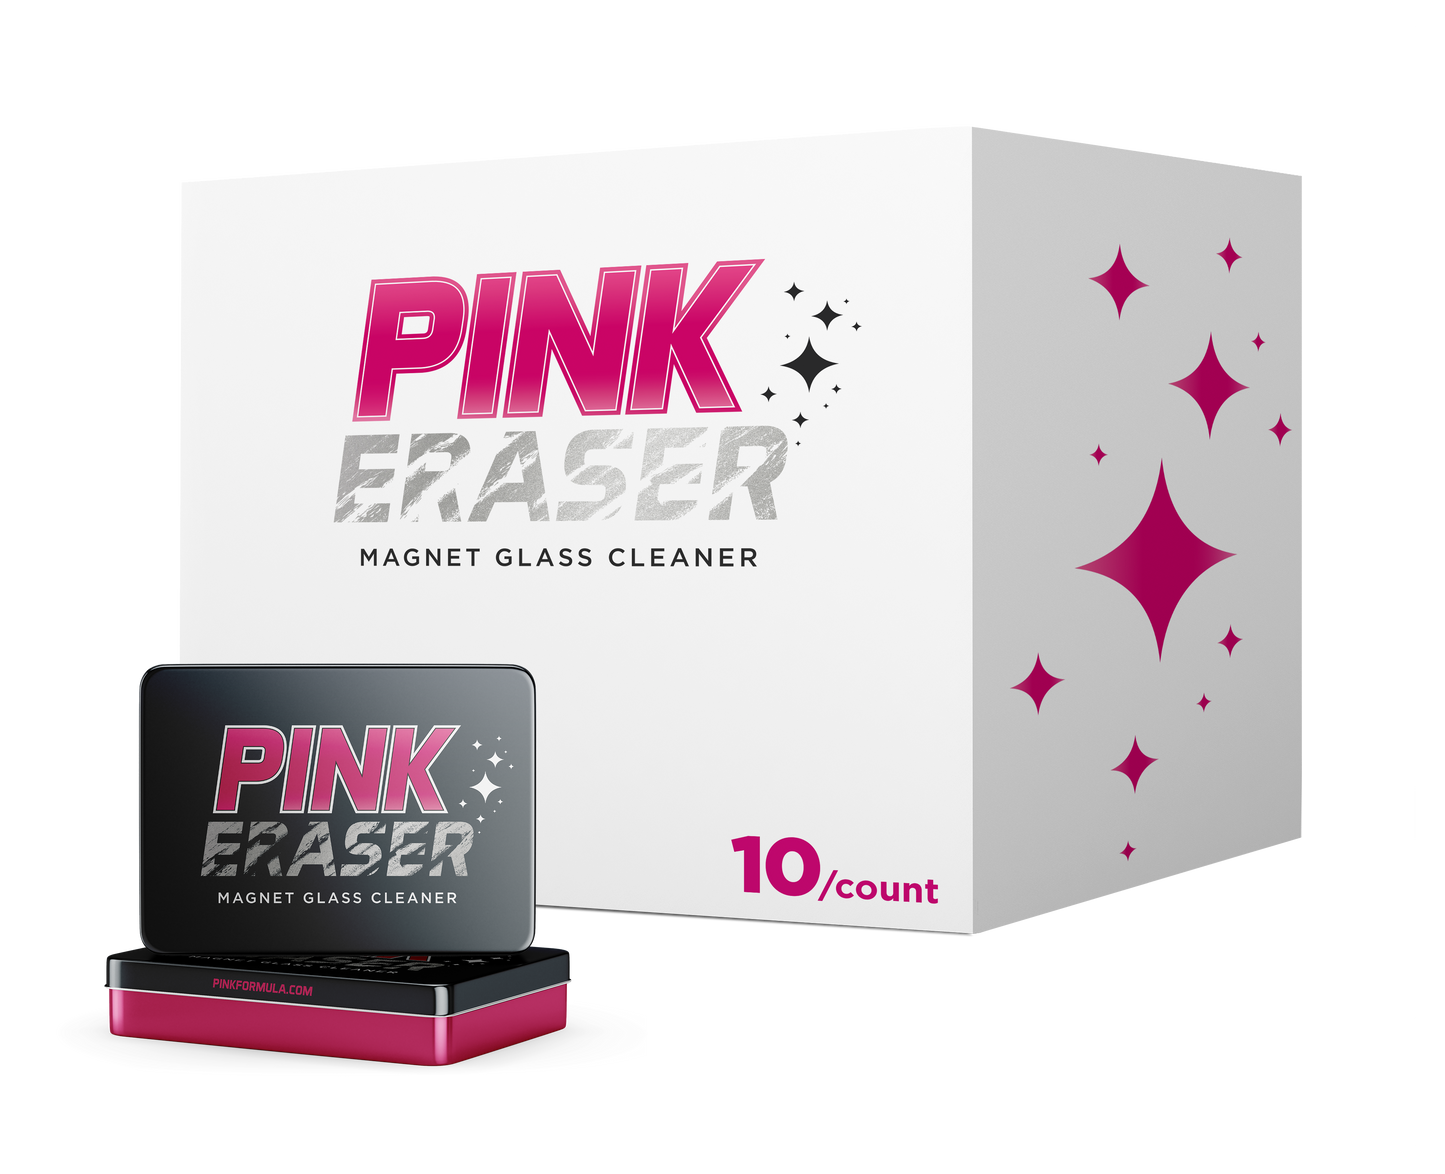 Pink Eraser - Magnet Glass Cleaner - Case - 10/ct